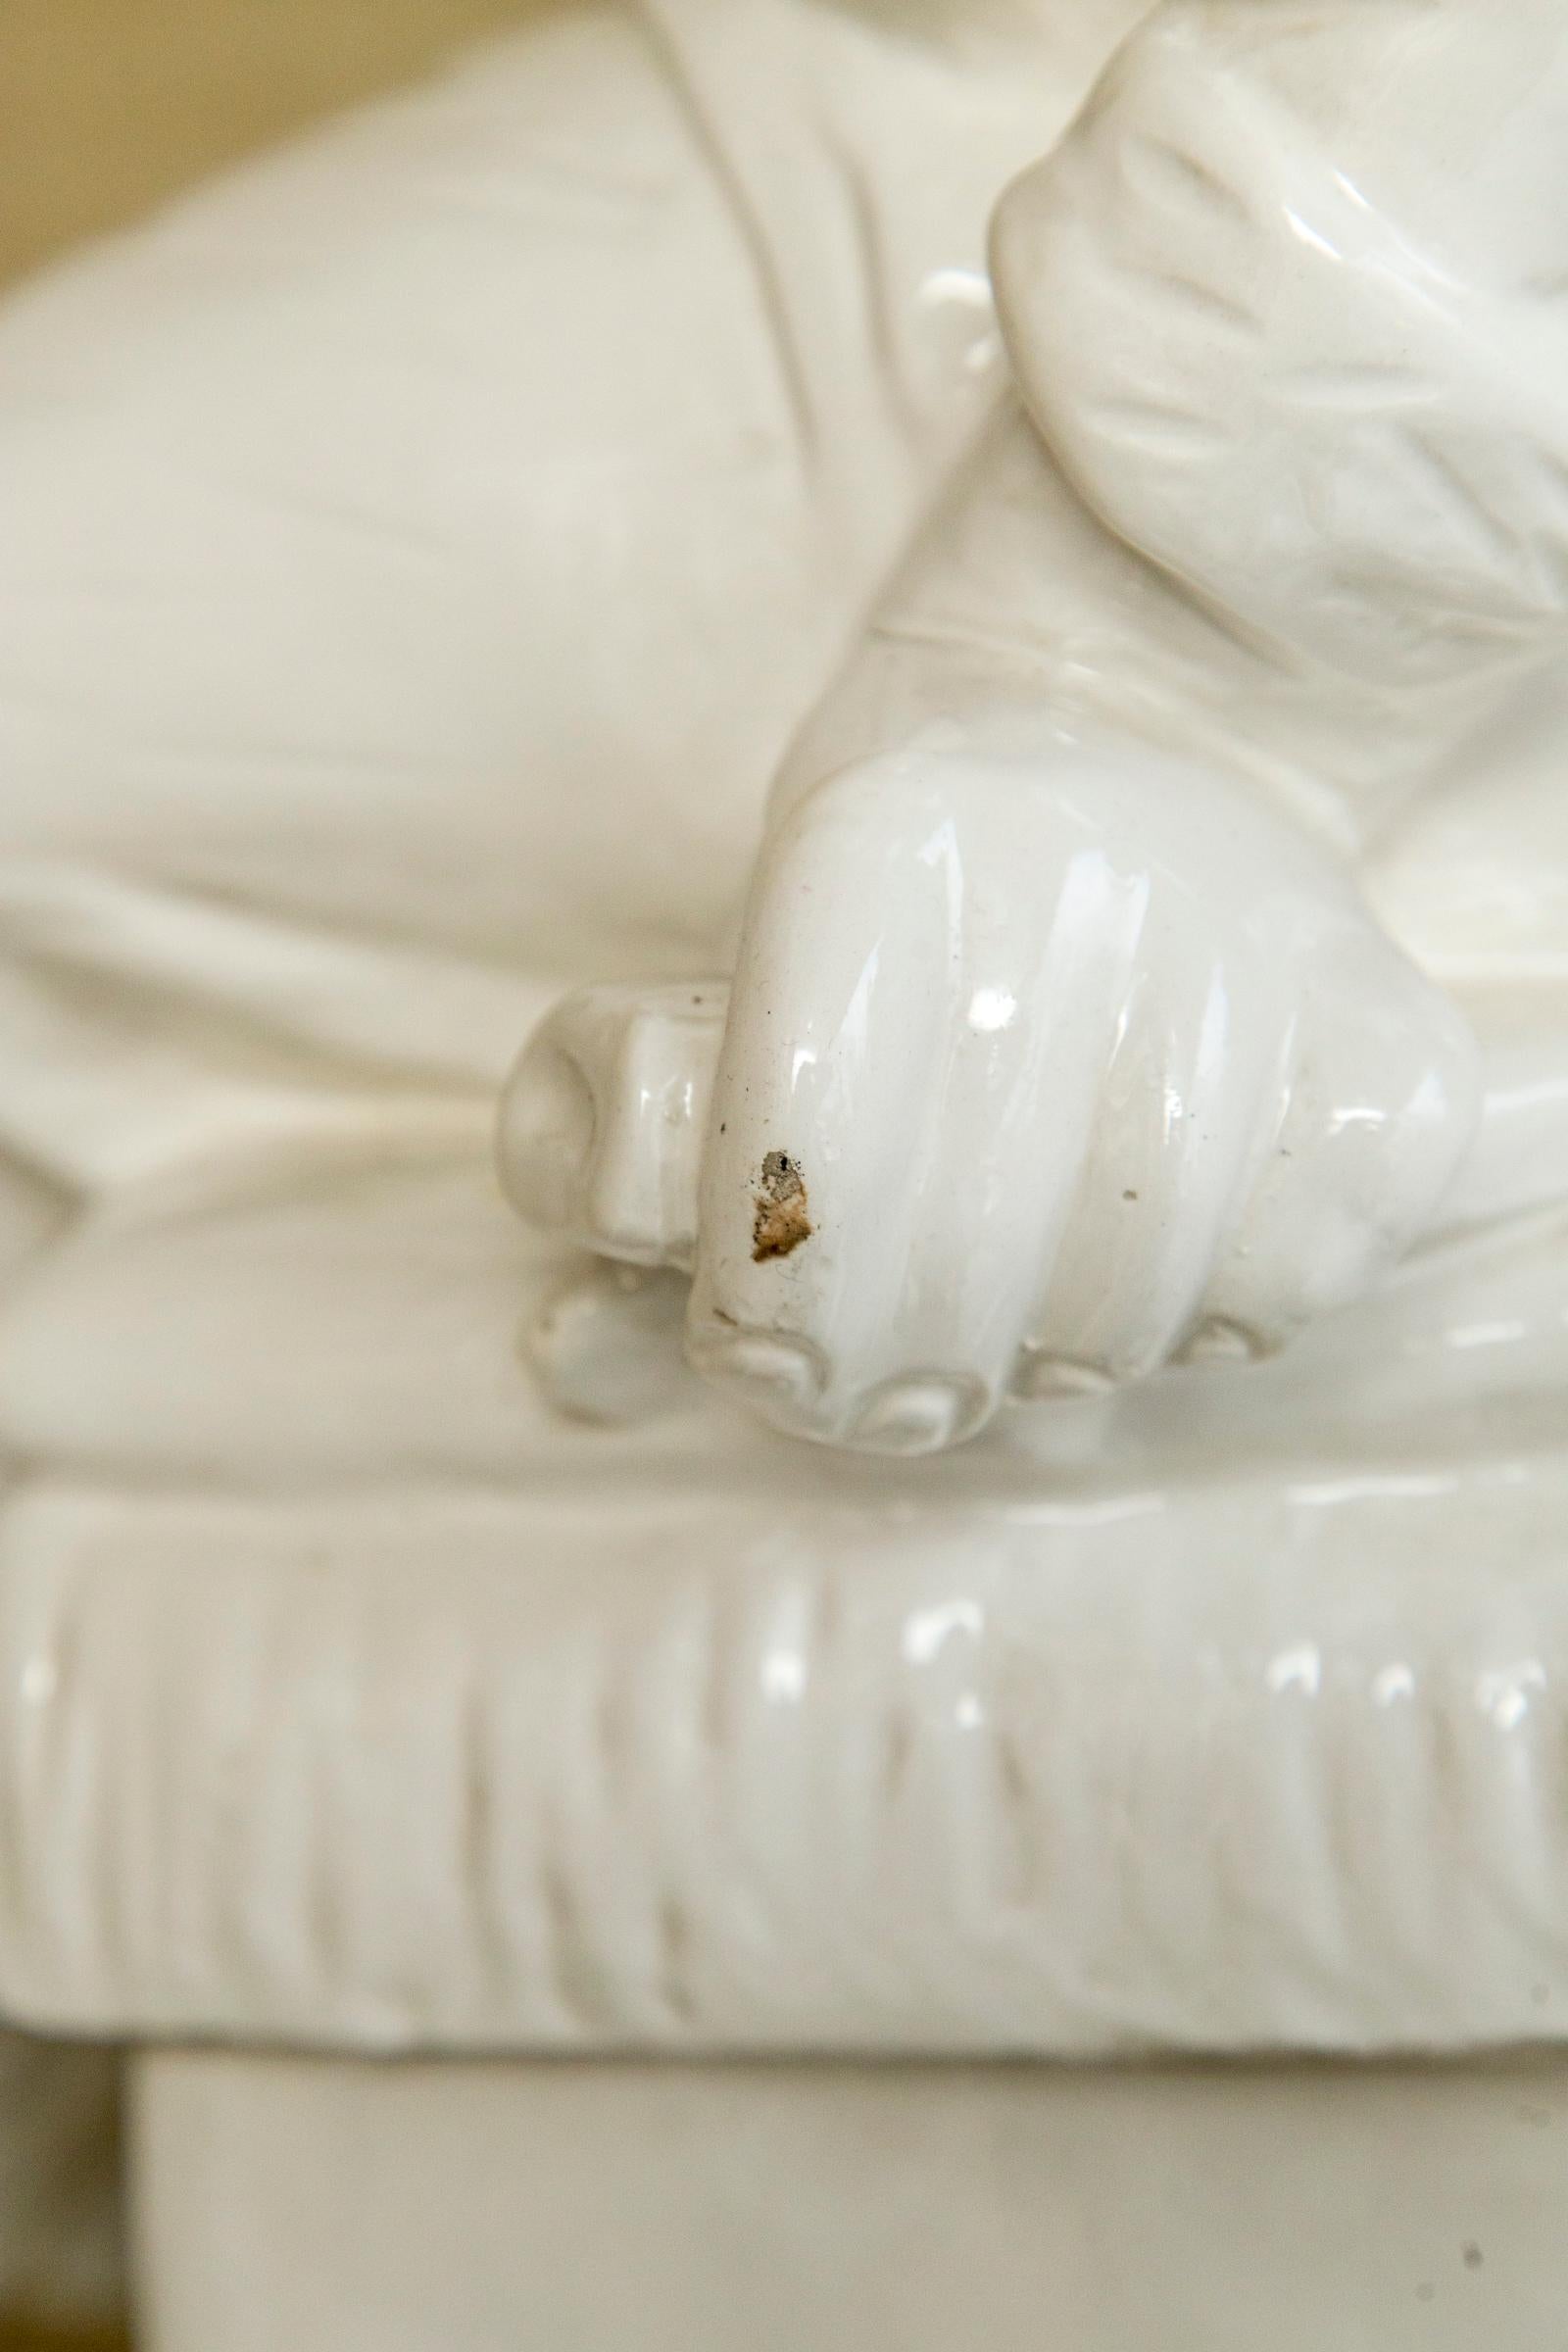 Terracotta White Glazed Asian Figure, on Pedestal